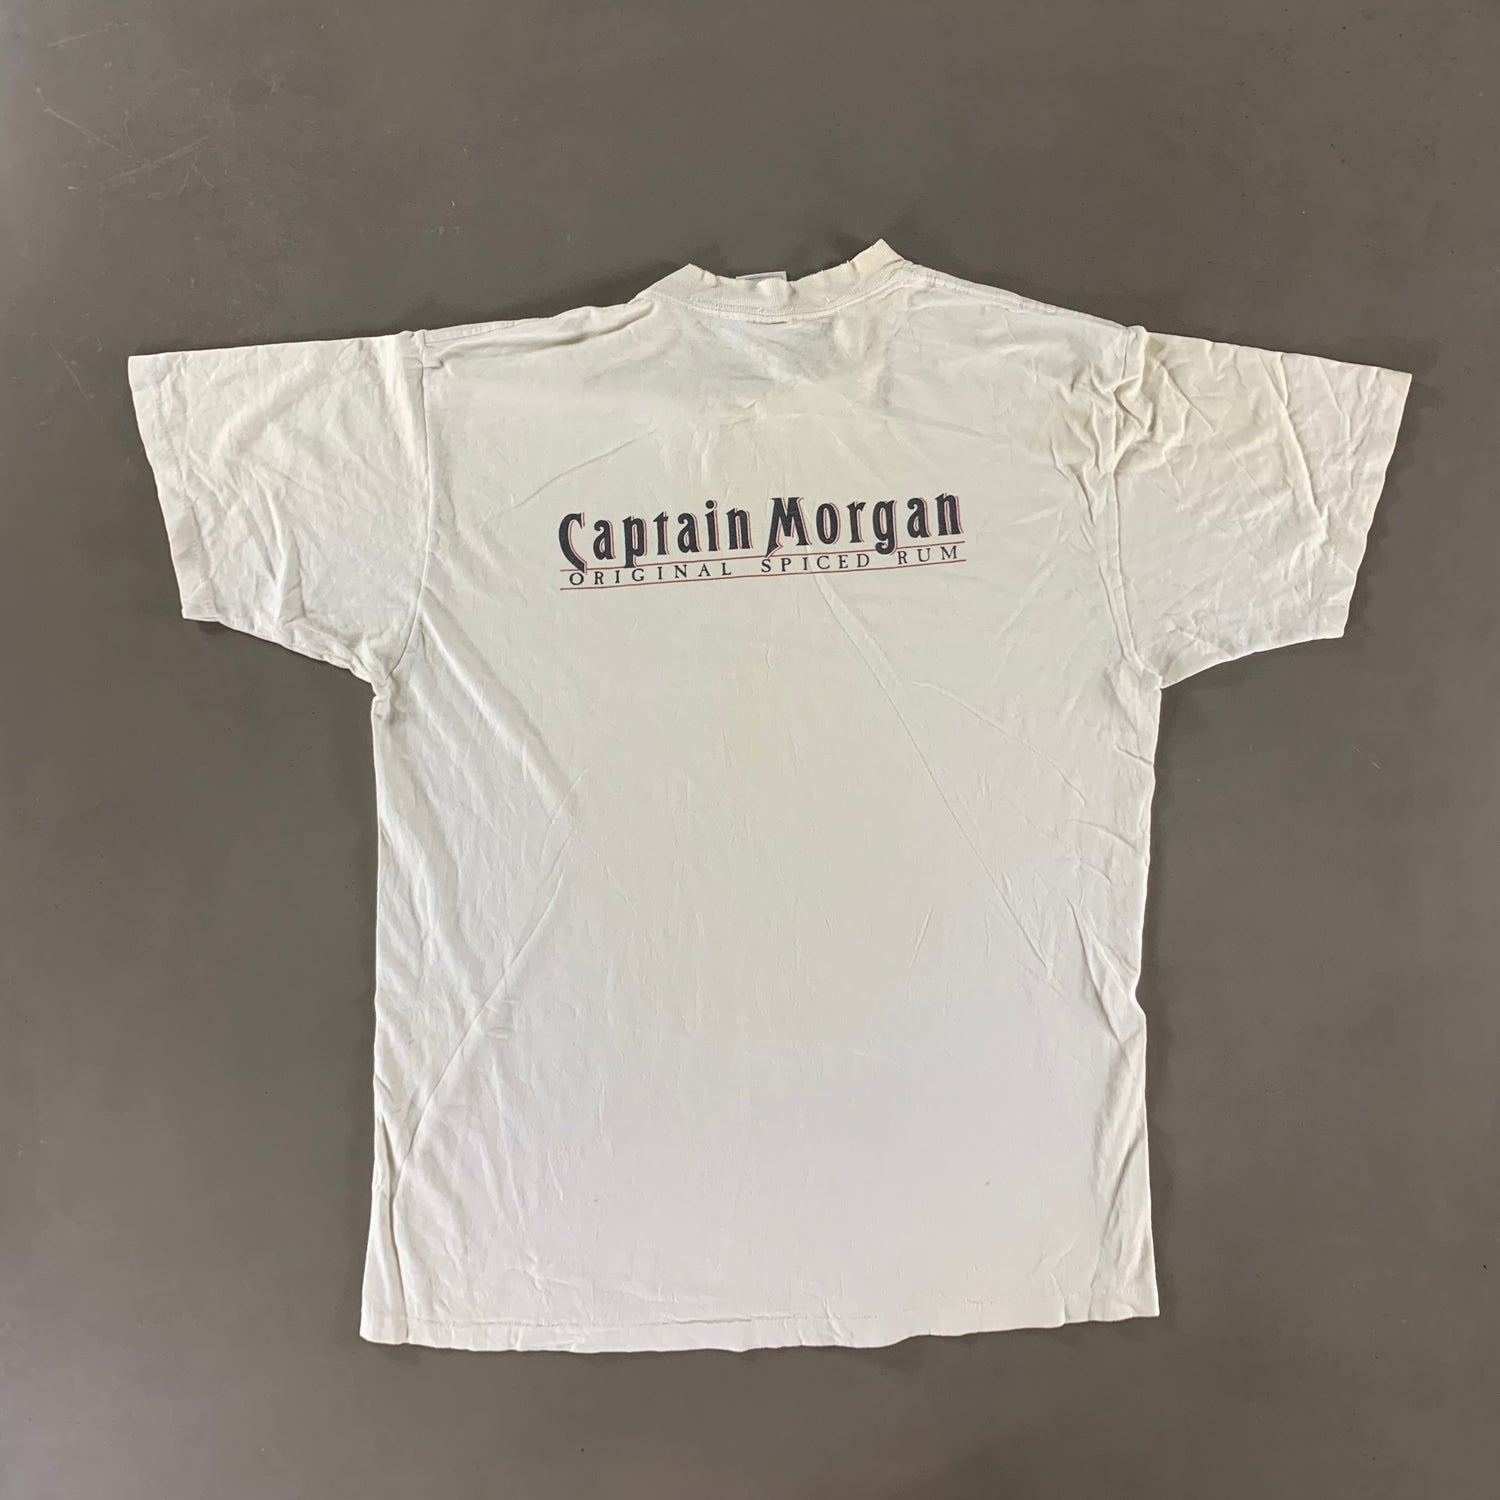 Vintage 1990s Captain Morgan T-shirt size XL